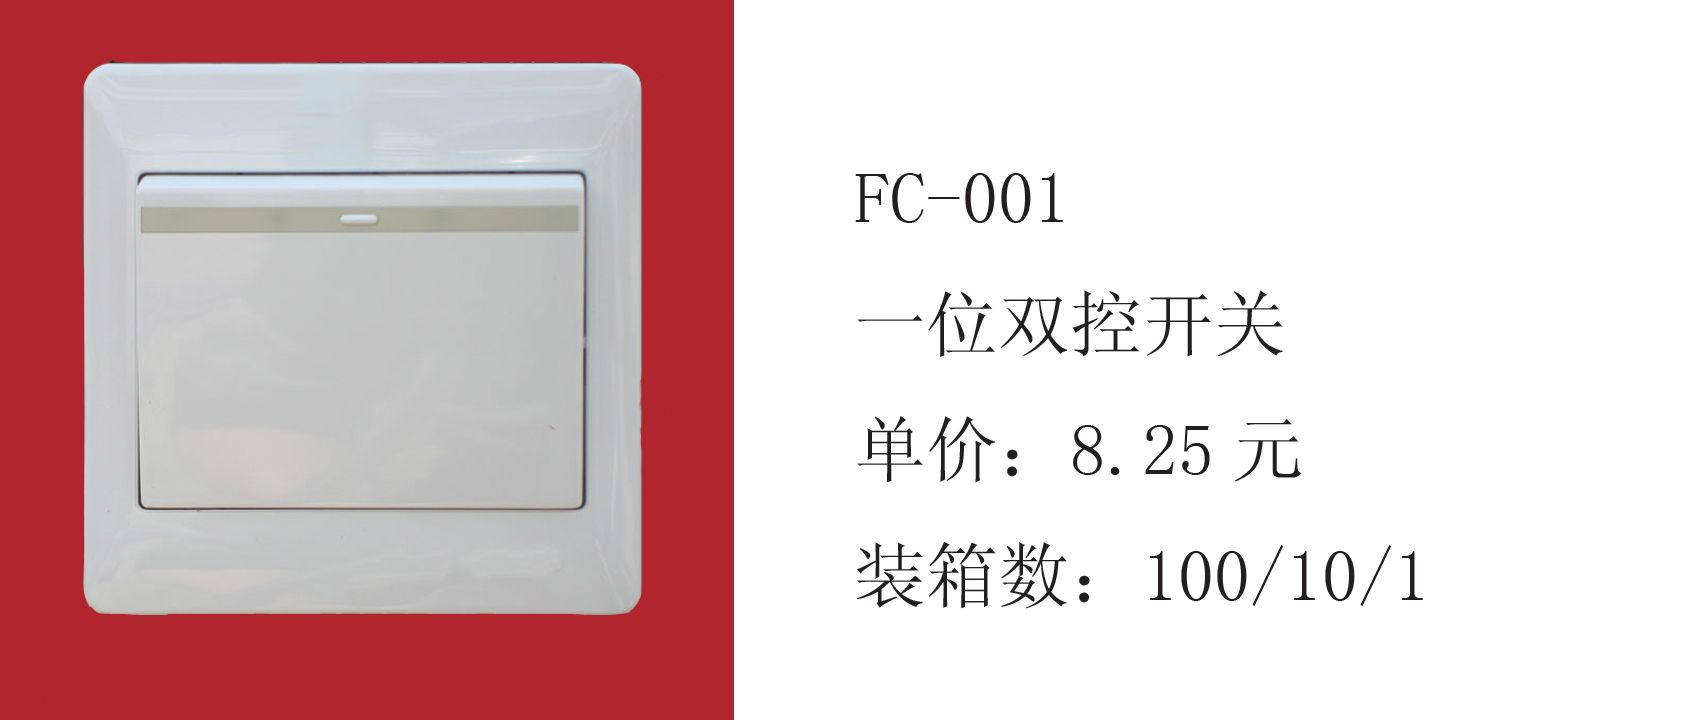 松日国际电气有限公司 - 产品相册 - 中国建材第